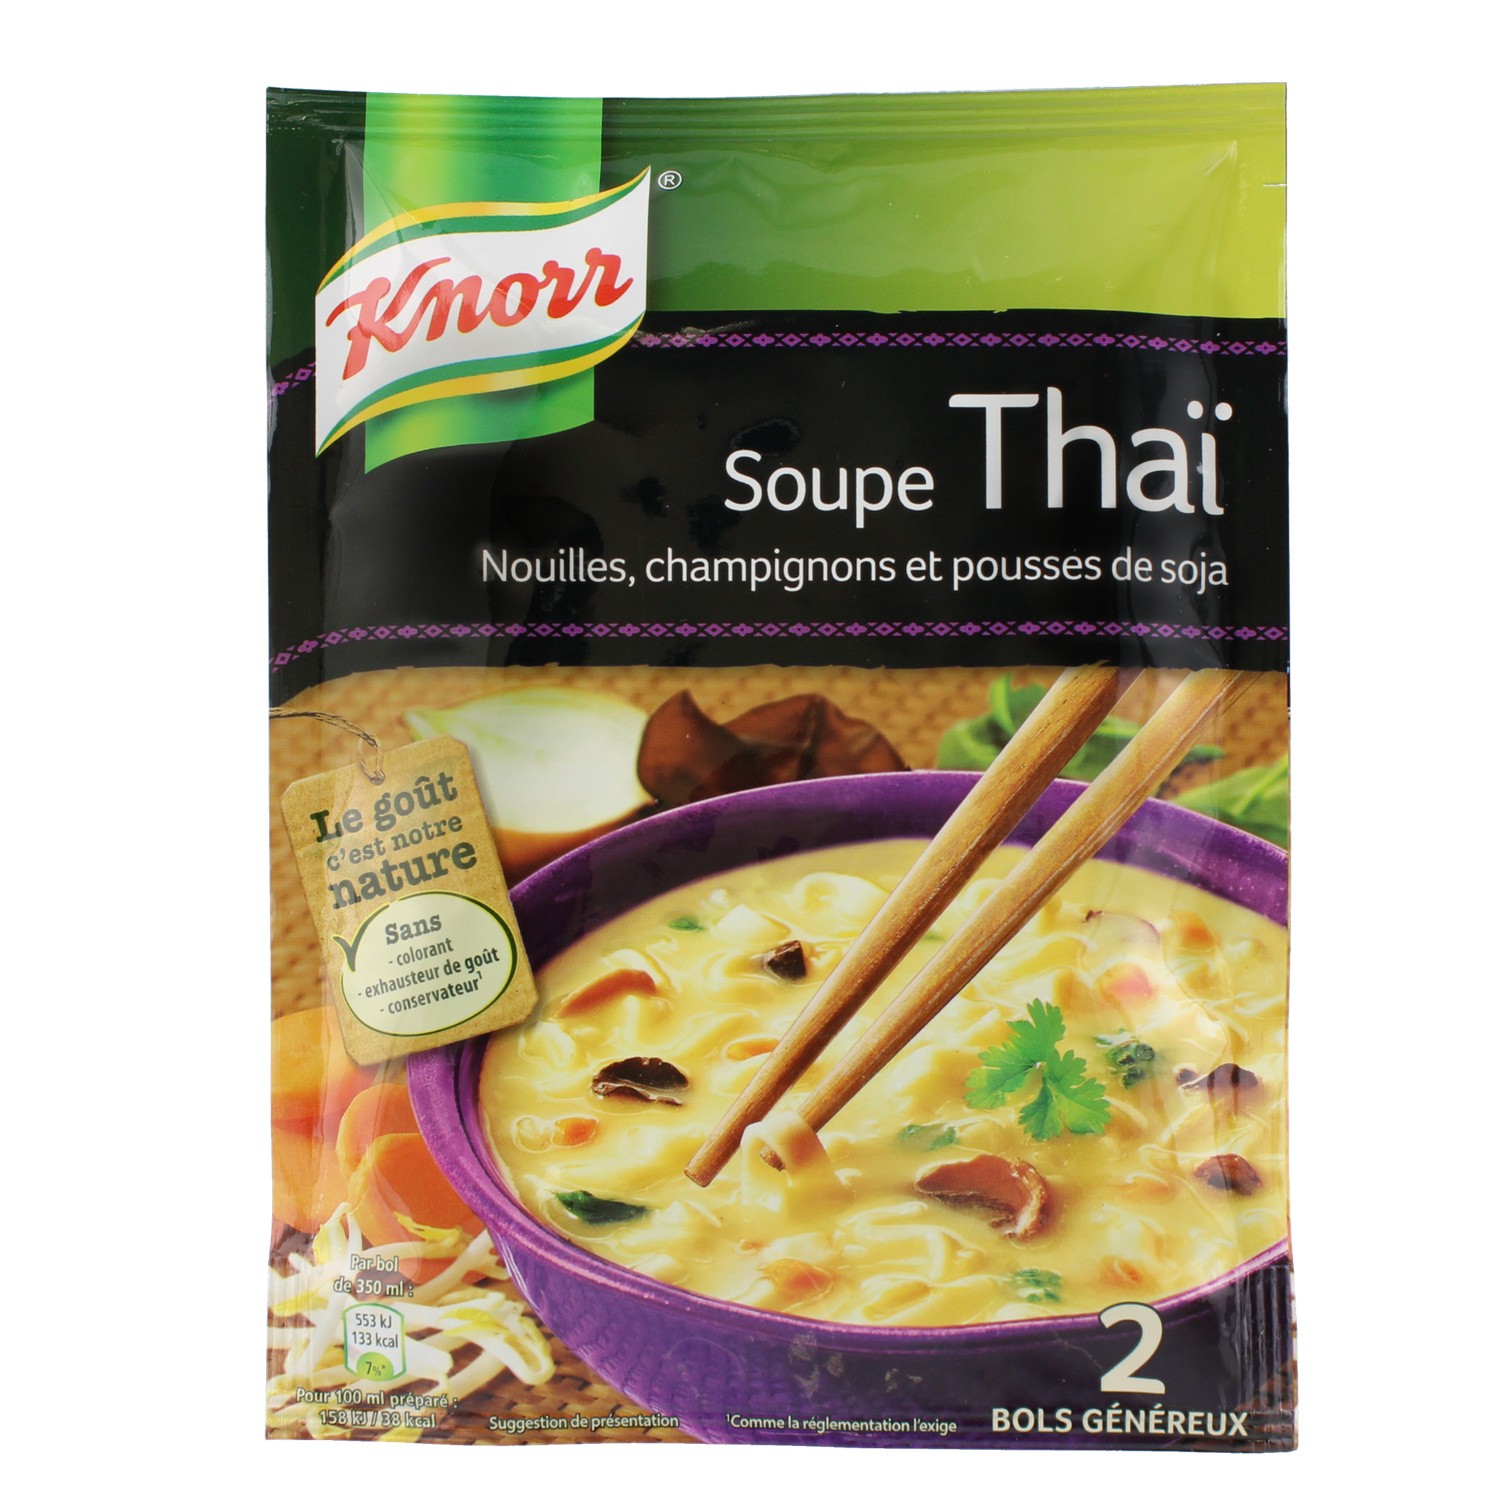 Soupe thai nouilles champigons et pousses de soja